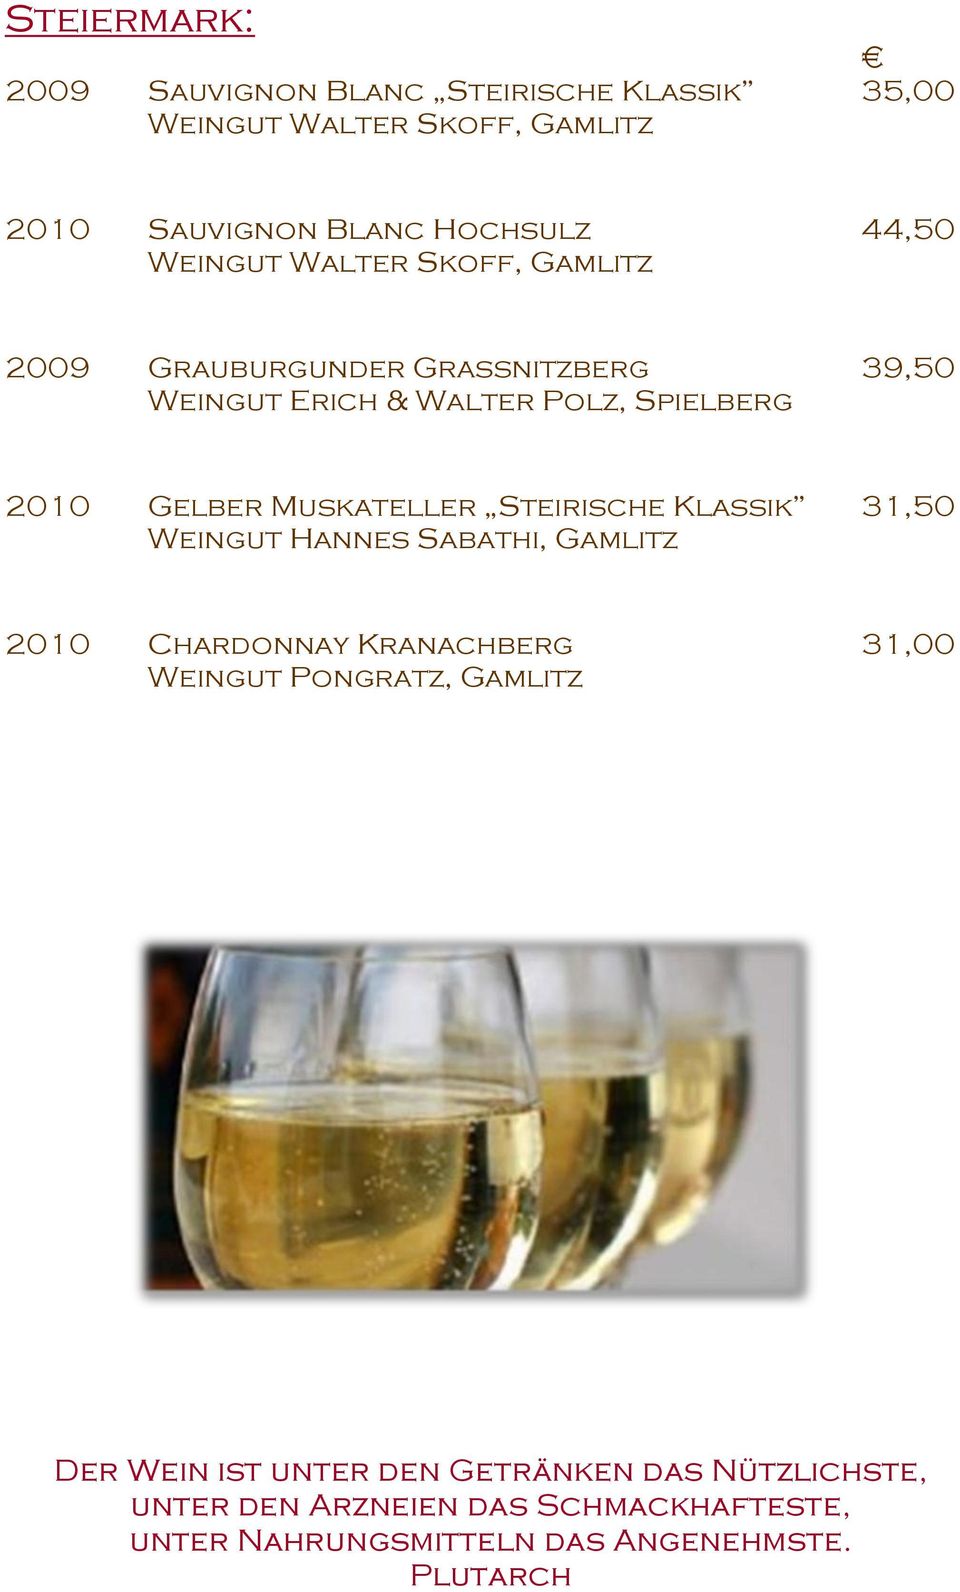 Muskateller Steirische Klassik 31,50 Weingut Hannes Sabathi, Gamlitz 2010 Chardonnay Kranachberg 31,00 Weingut Pongratz,